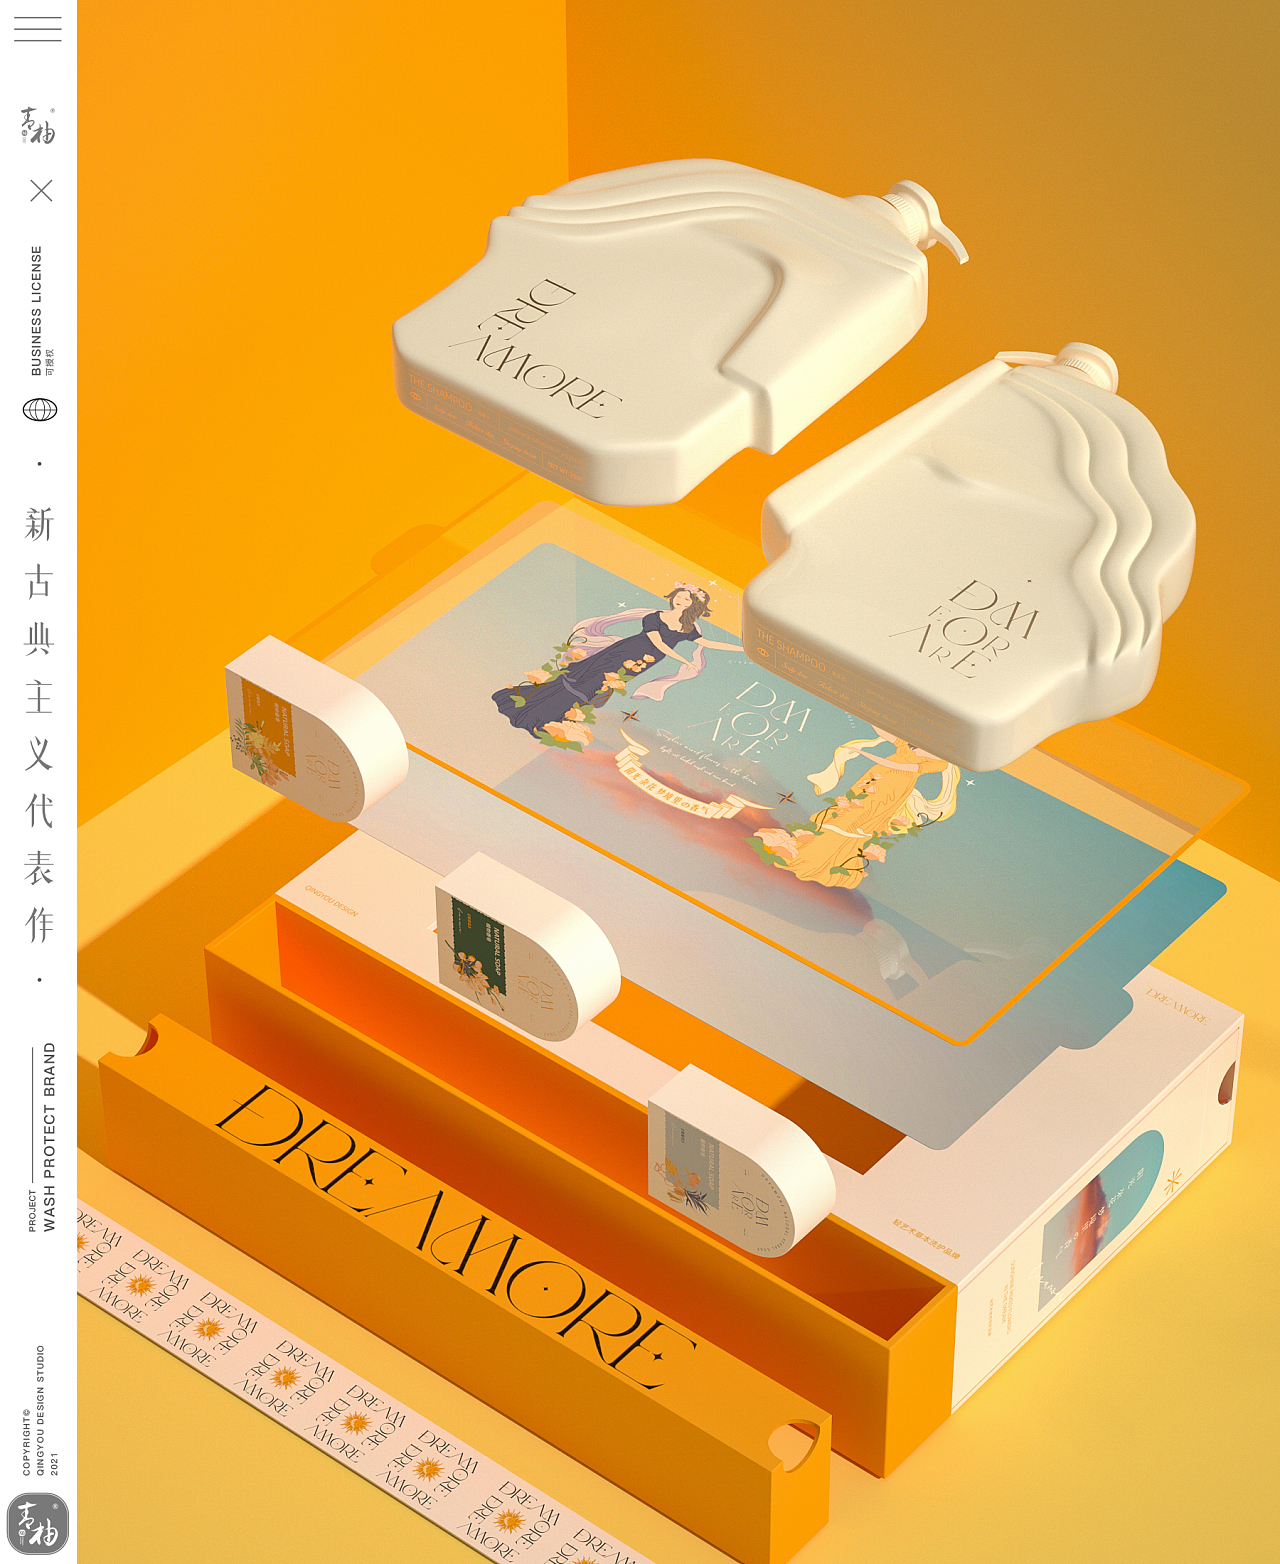 青柚设计× Dreamore丨洗发水 香皂 产品造型及包装设计